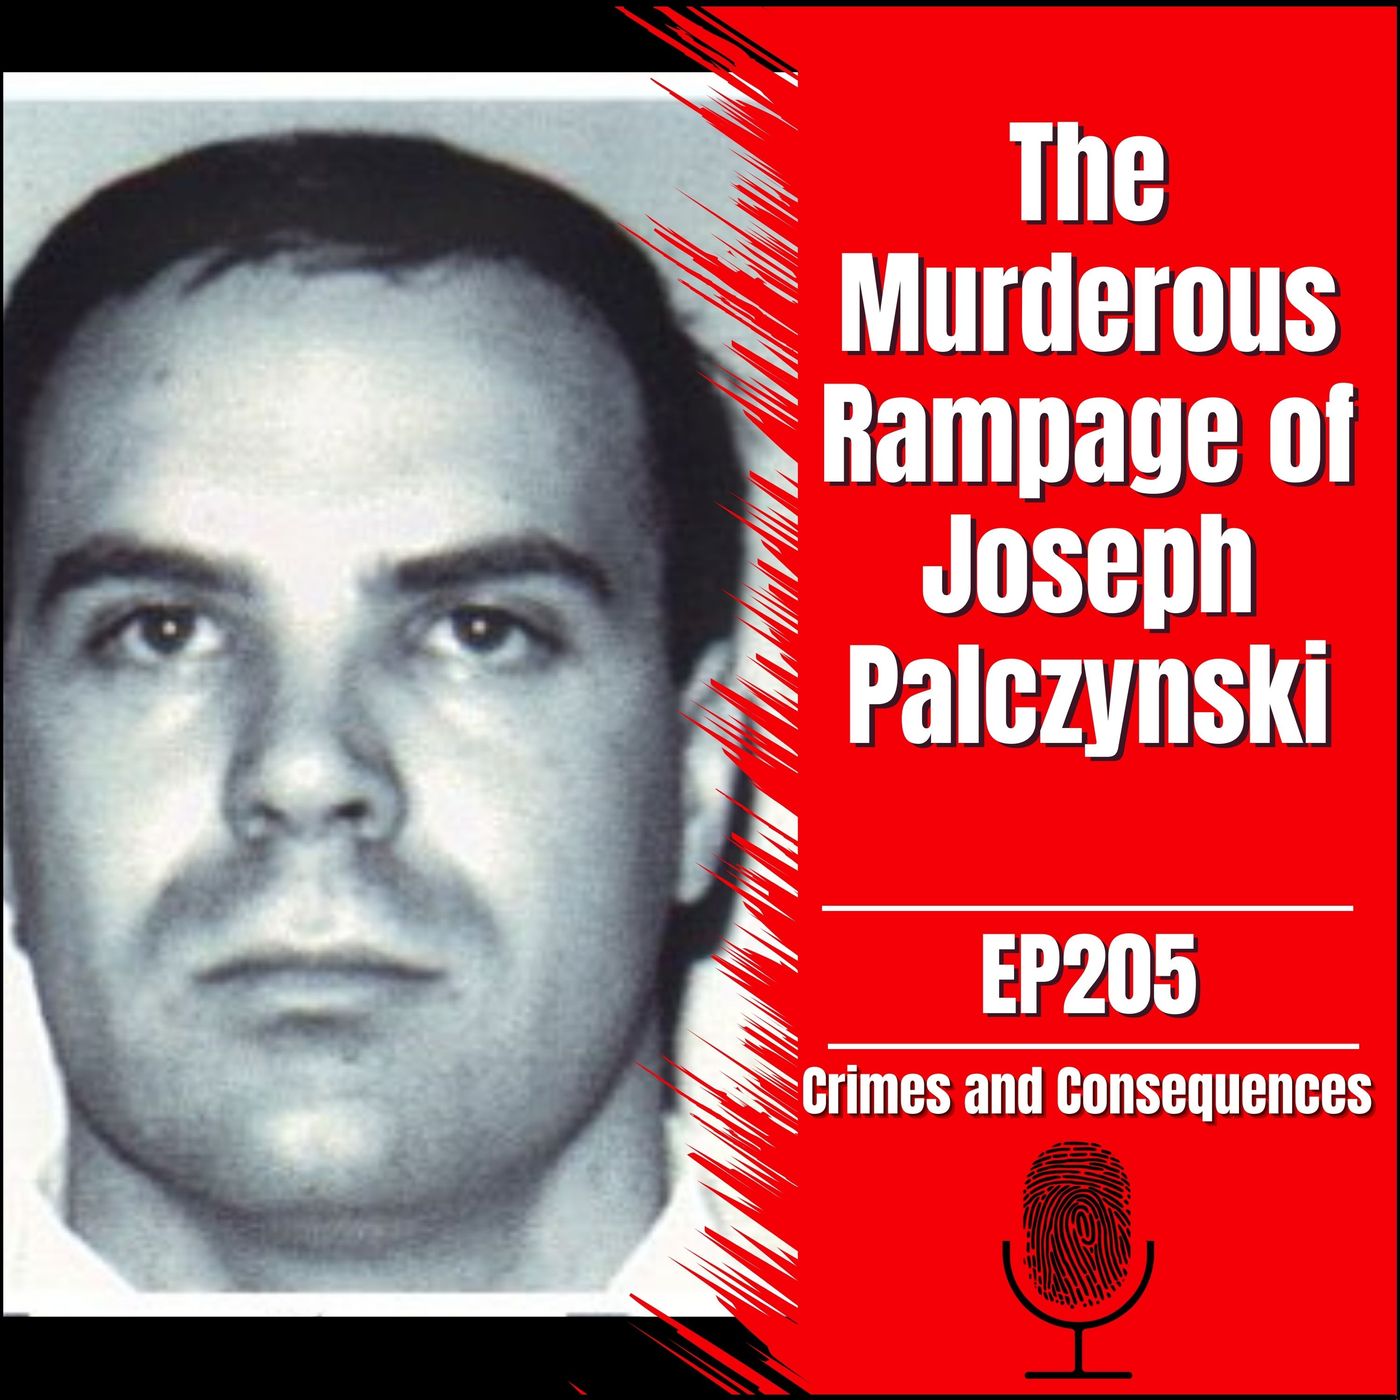 EP206: The Murderous Rampage of Joseph Palczynski